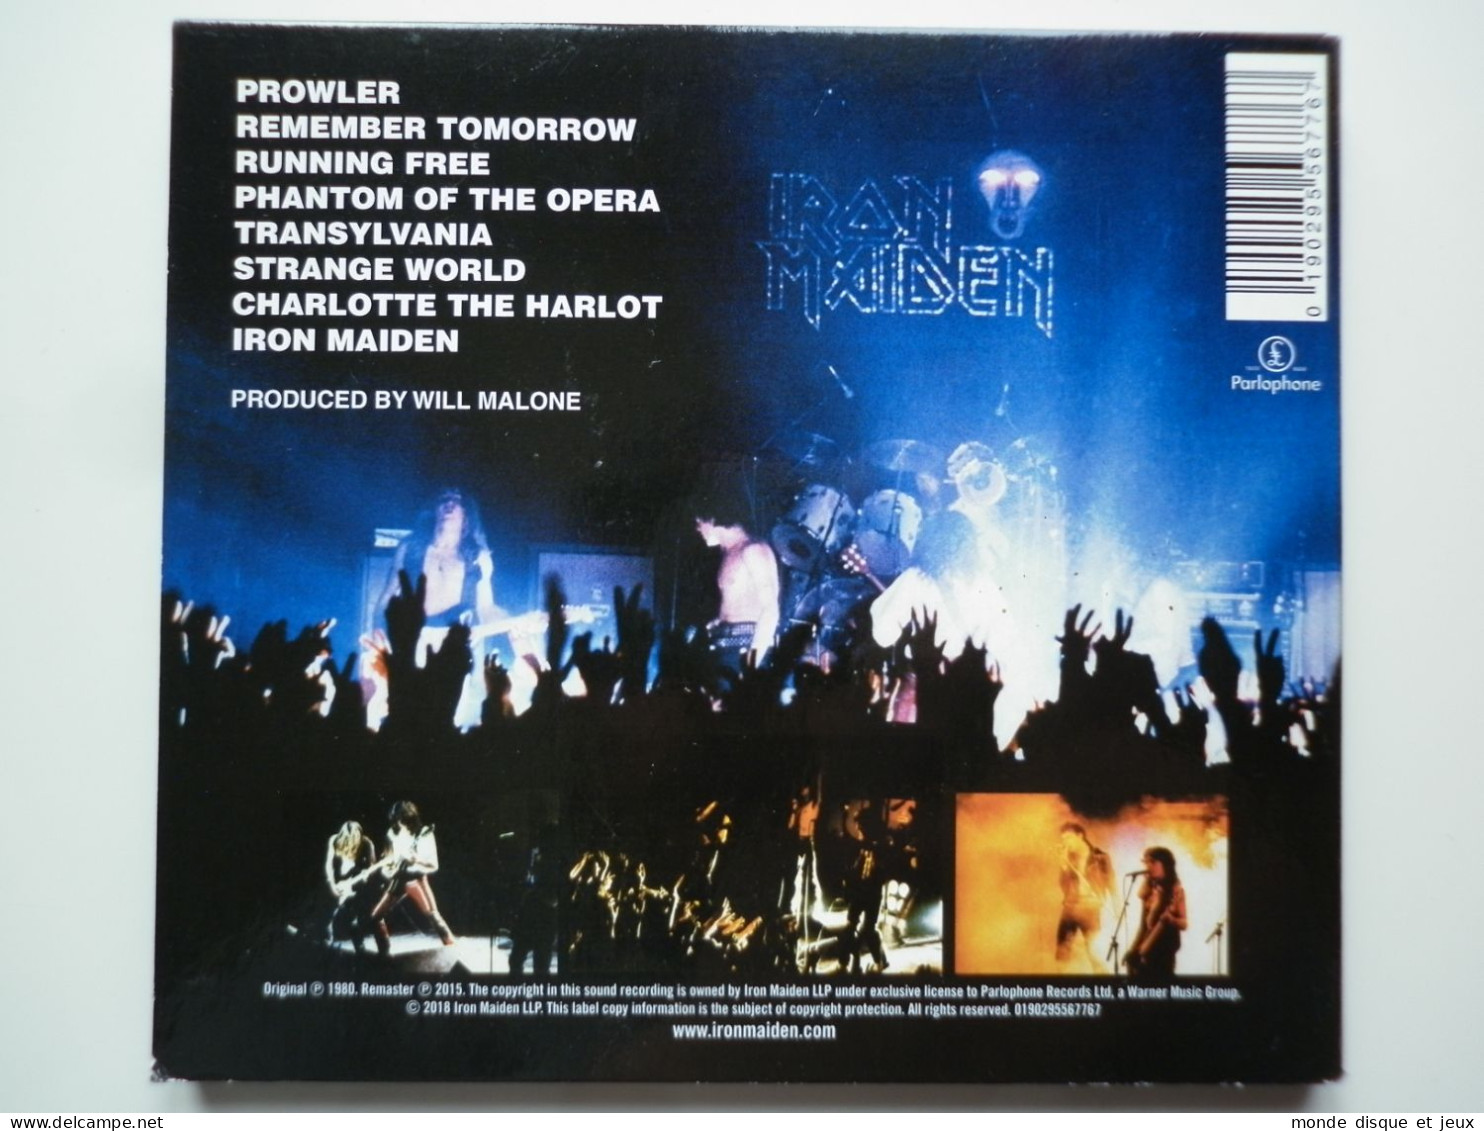 Iron Maiden Cd Album Digipack Iron Maiden - Otros - Canción Francesa